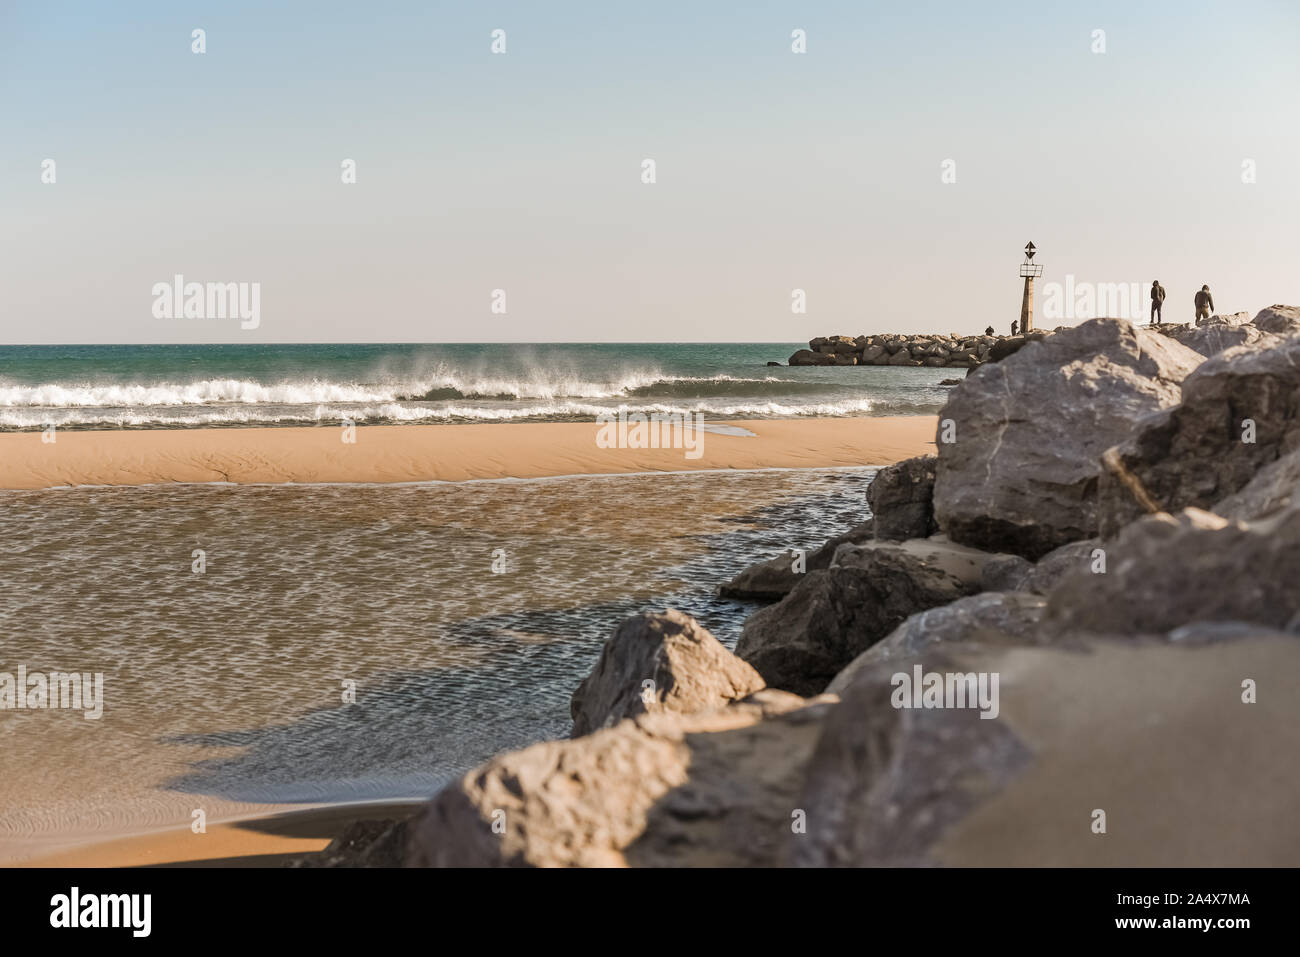 Personnes debout sur des rochers sur la plage dans le sud de la France Banque D'Images